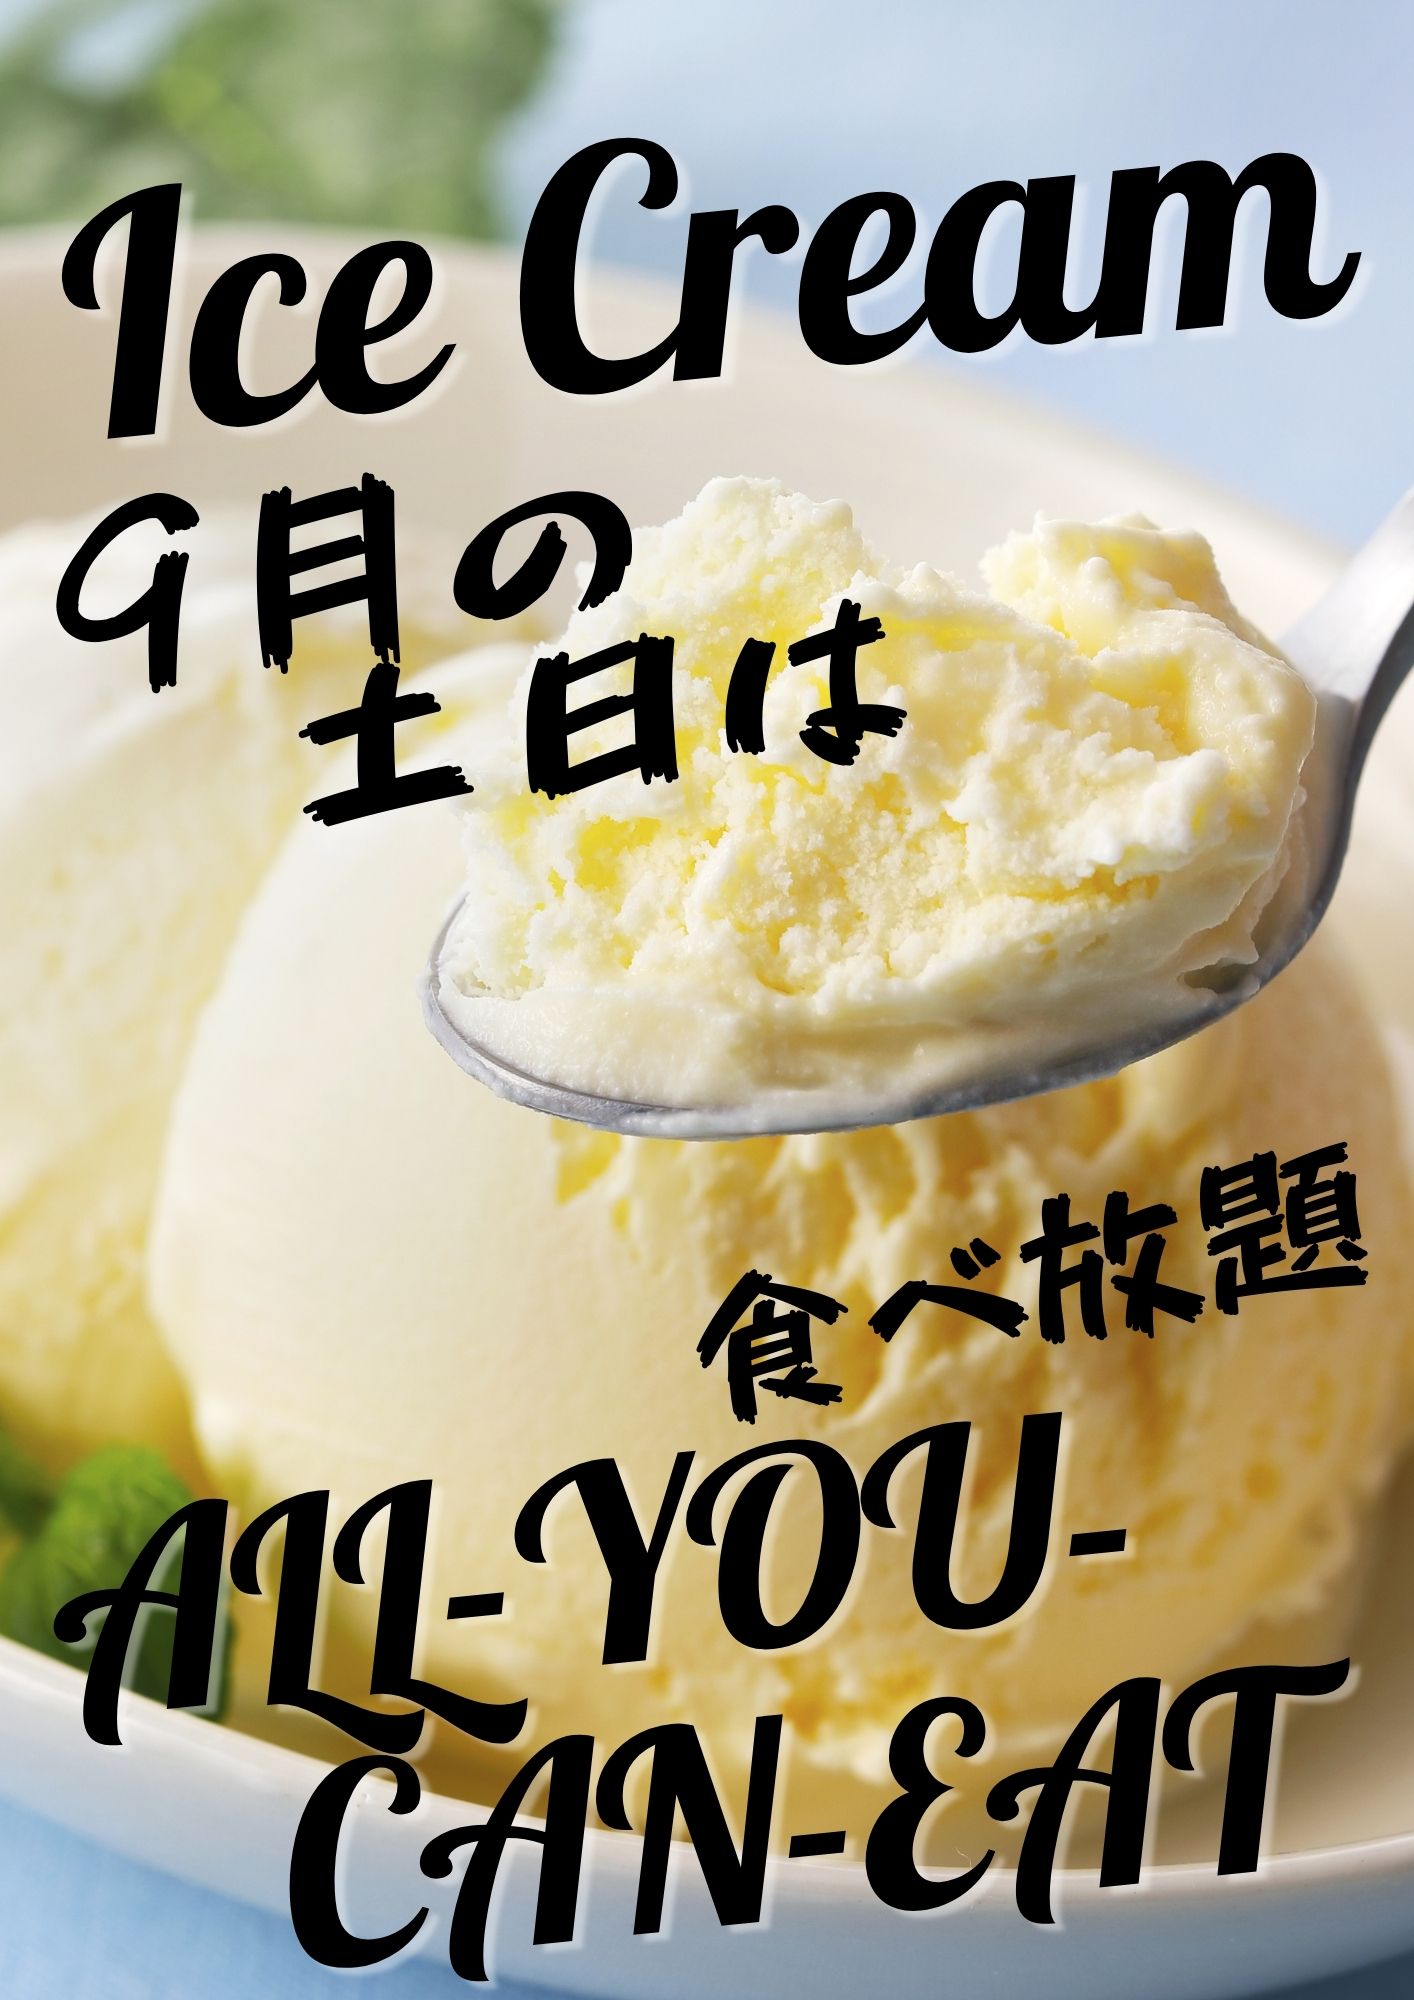 アイスクリーム食べ放題のご案内